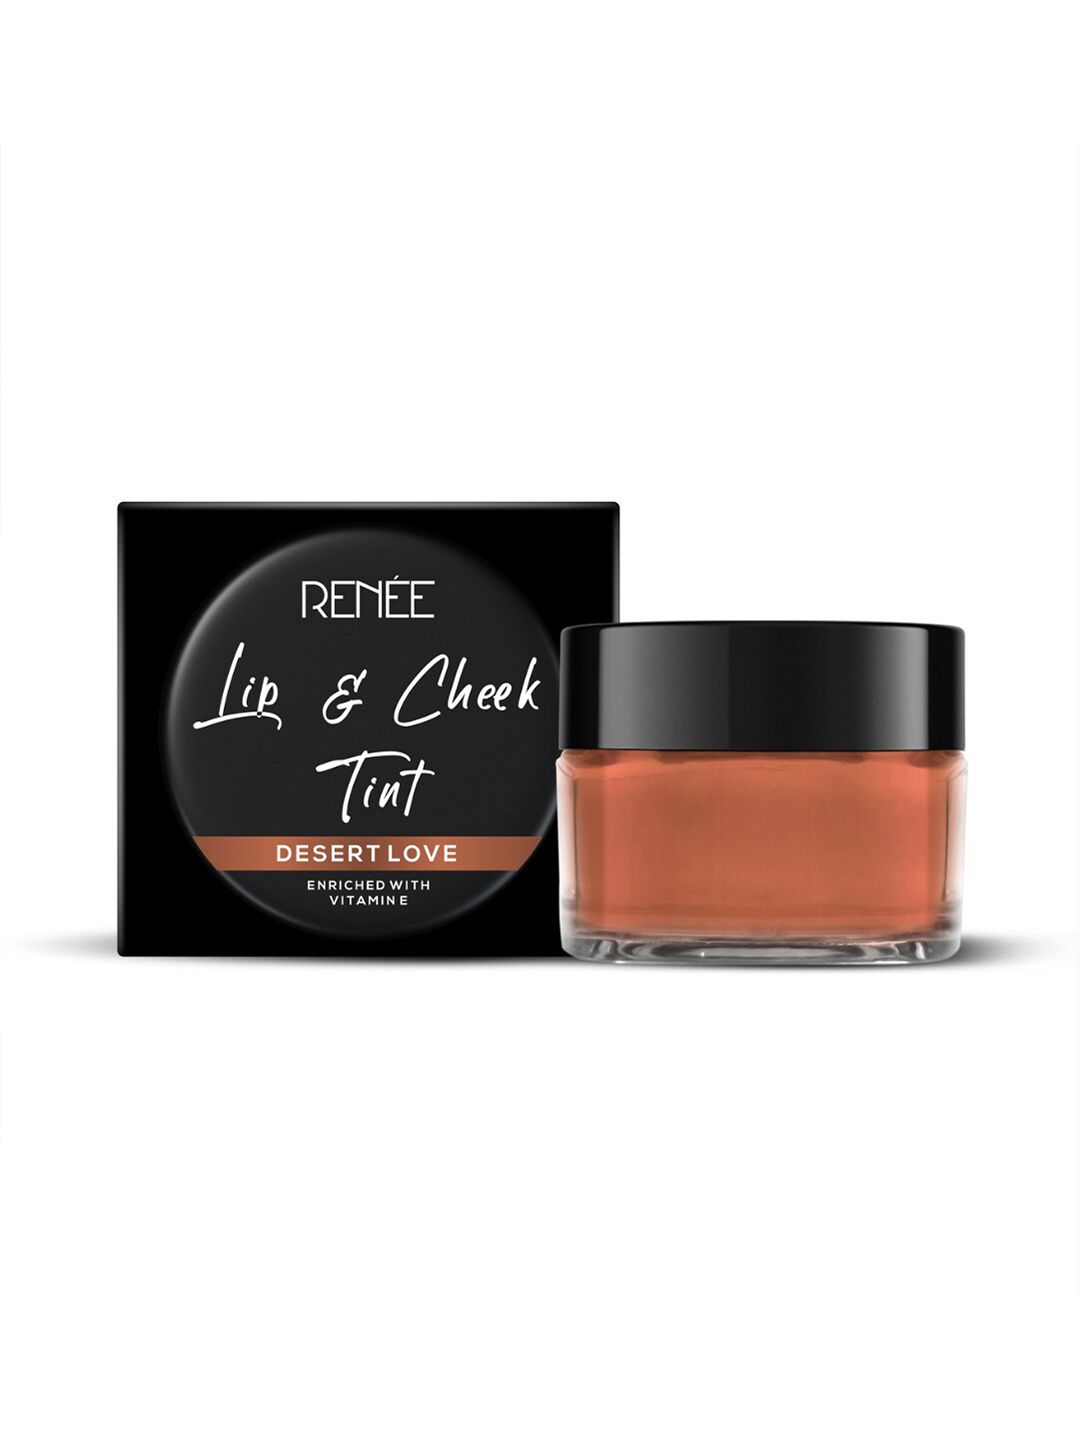 RENEE Lip & Cheek Tint - Desert Love 8g Price in India